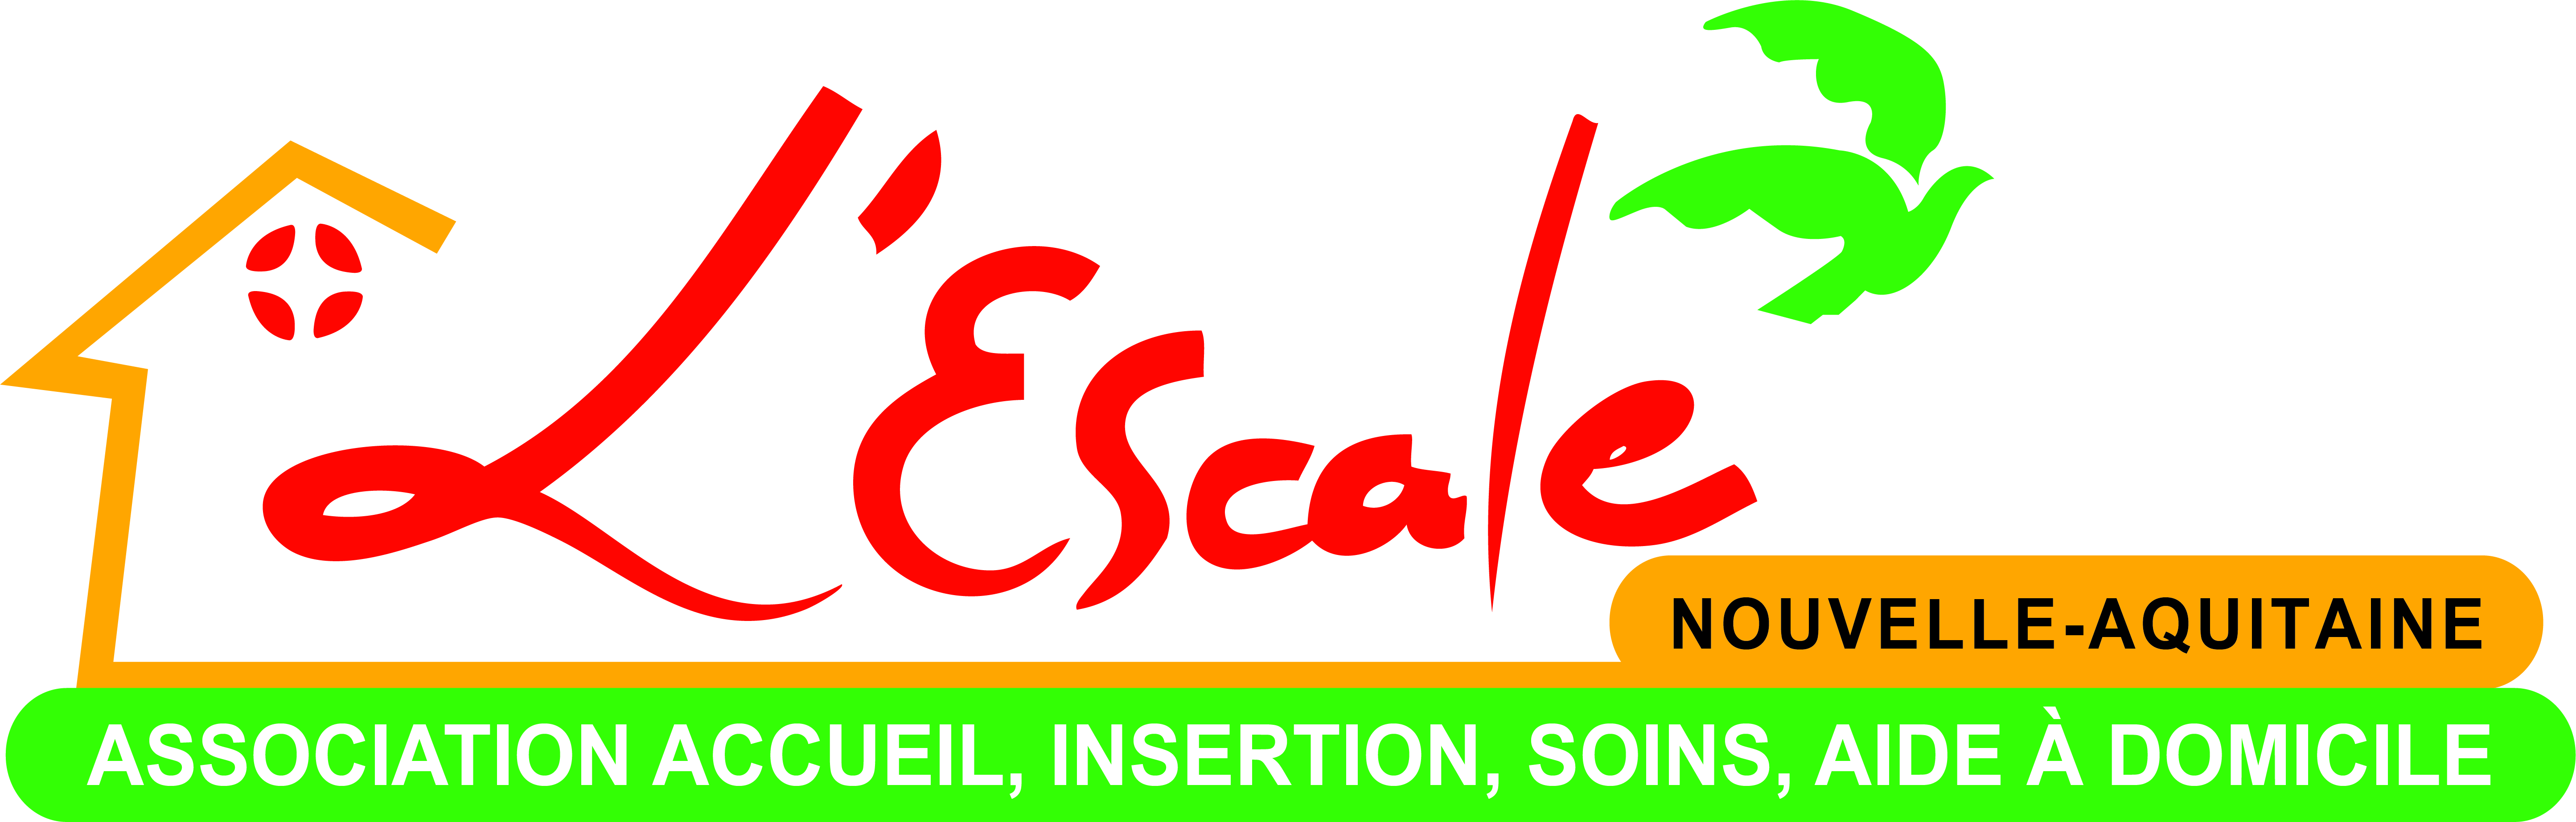 logo_2030_logo_escale_2020.jpg